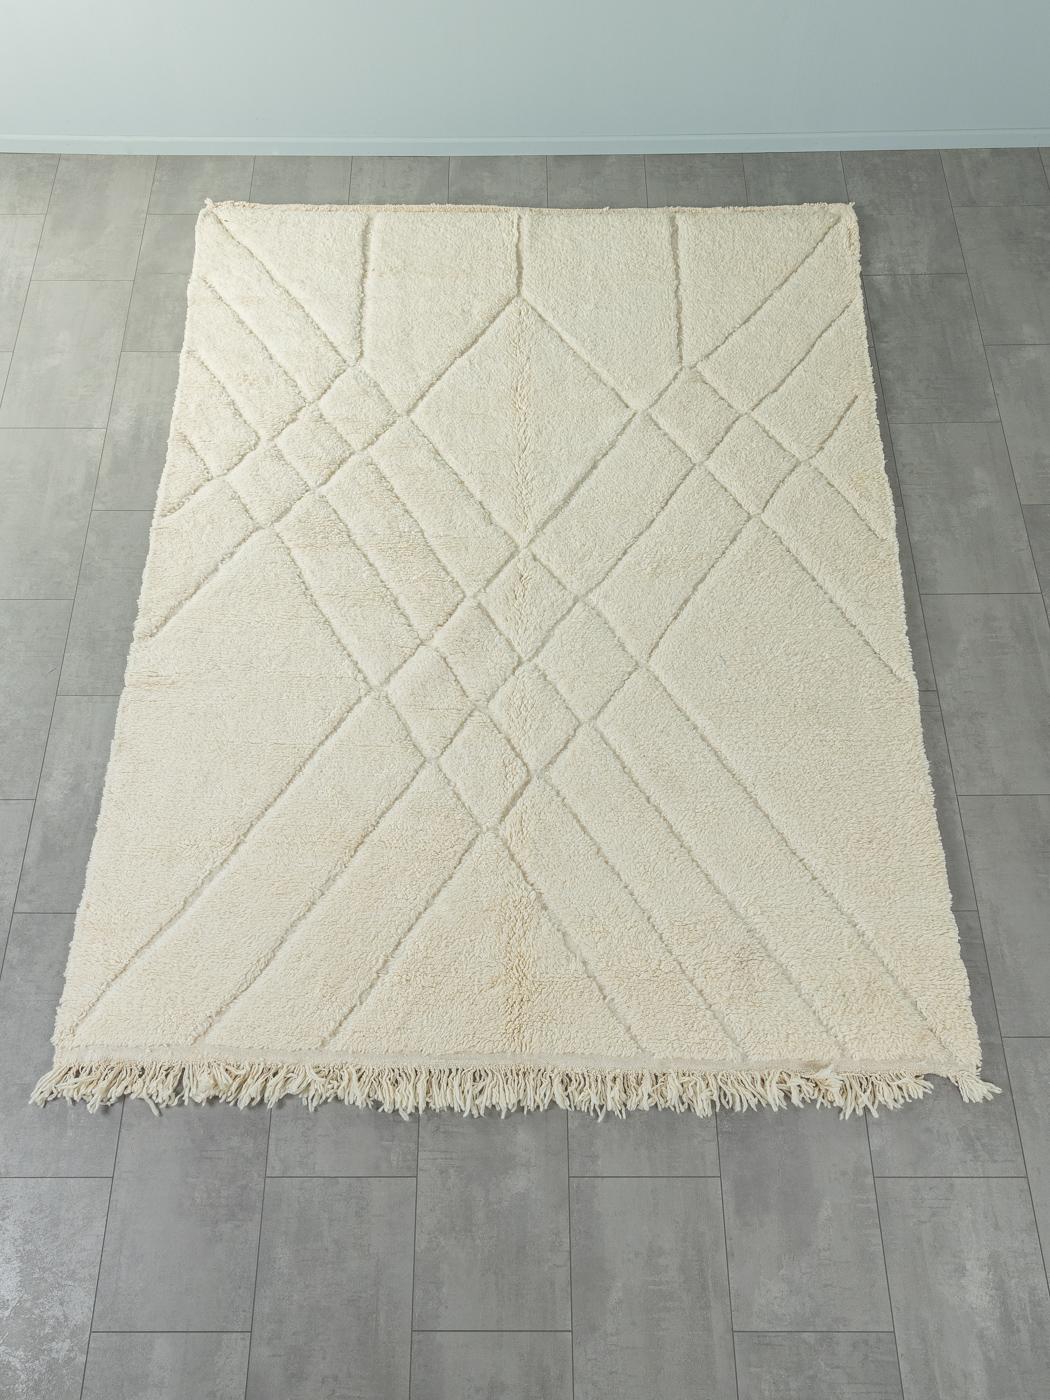 Dream Catcher ist ein moderner Teppich aus 100% Wolle - dick und weich, angenehm zu tragen. Unsere Berberteppiche werden von Amazigh-Frauen im Atlasgebirge handgewebt und handgeknüpft. Diese Gemeinschaften stellen schon seit Tausenden von Jahren